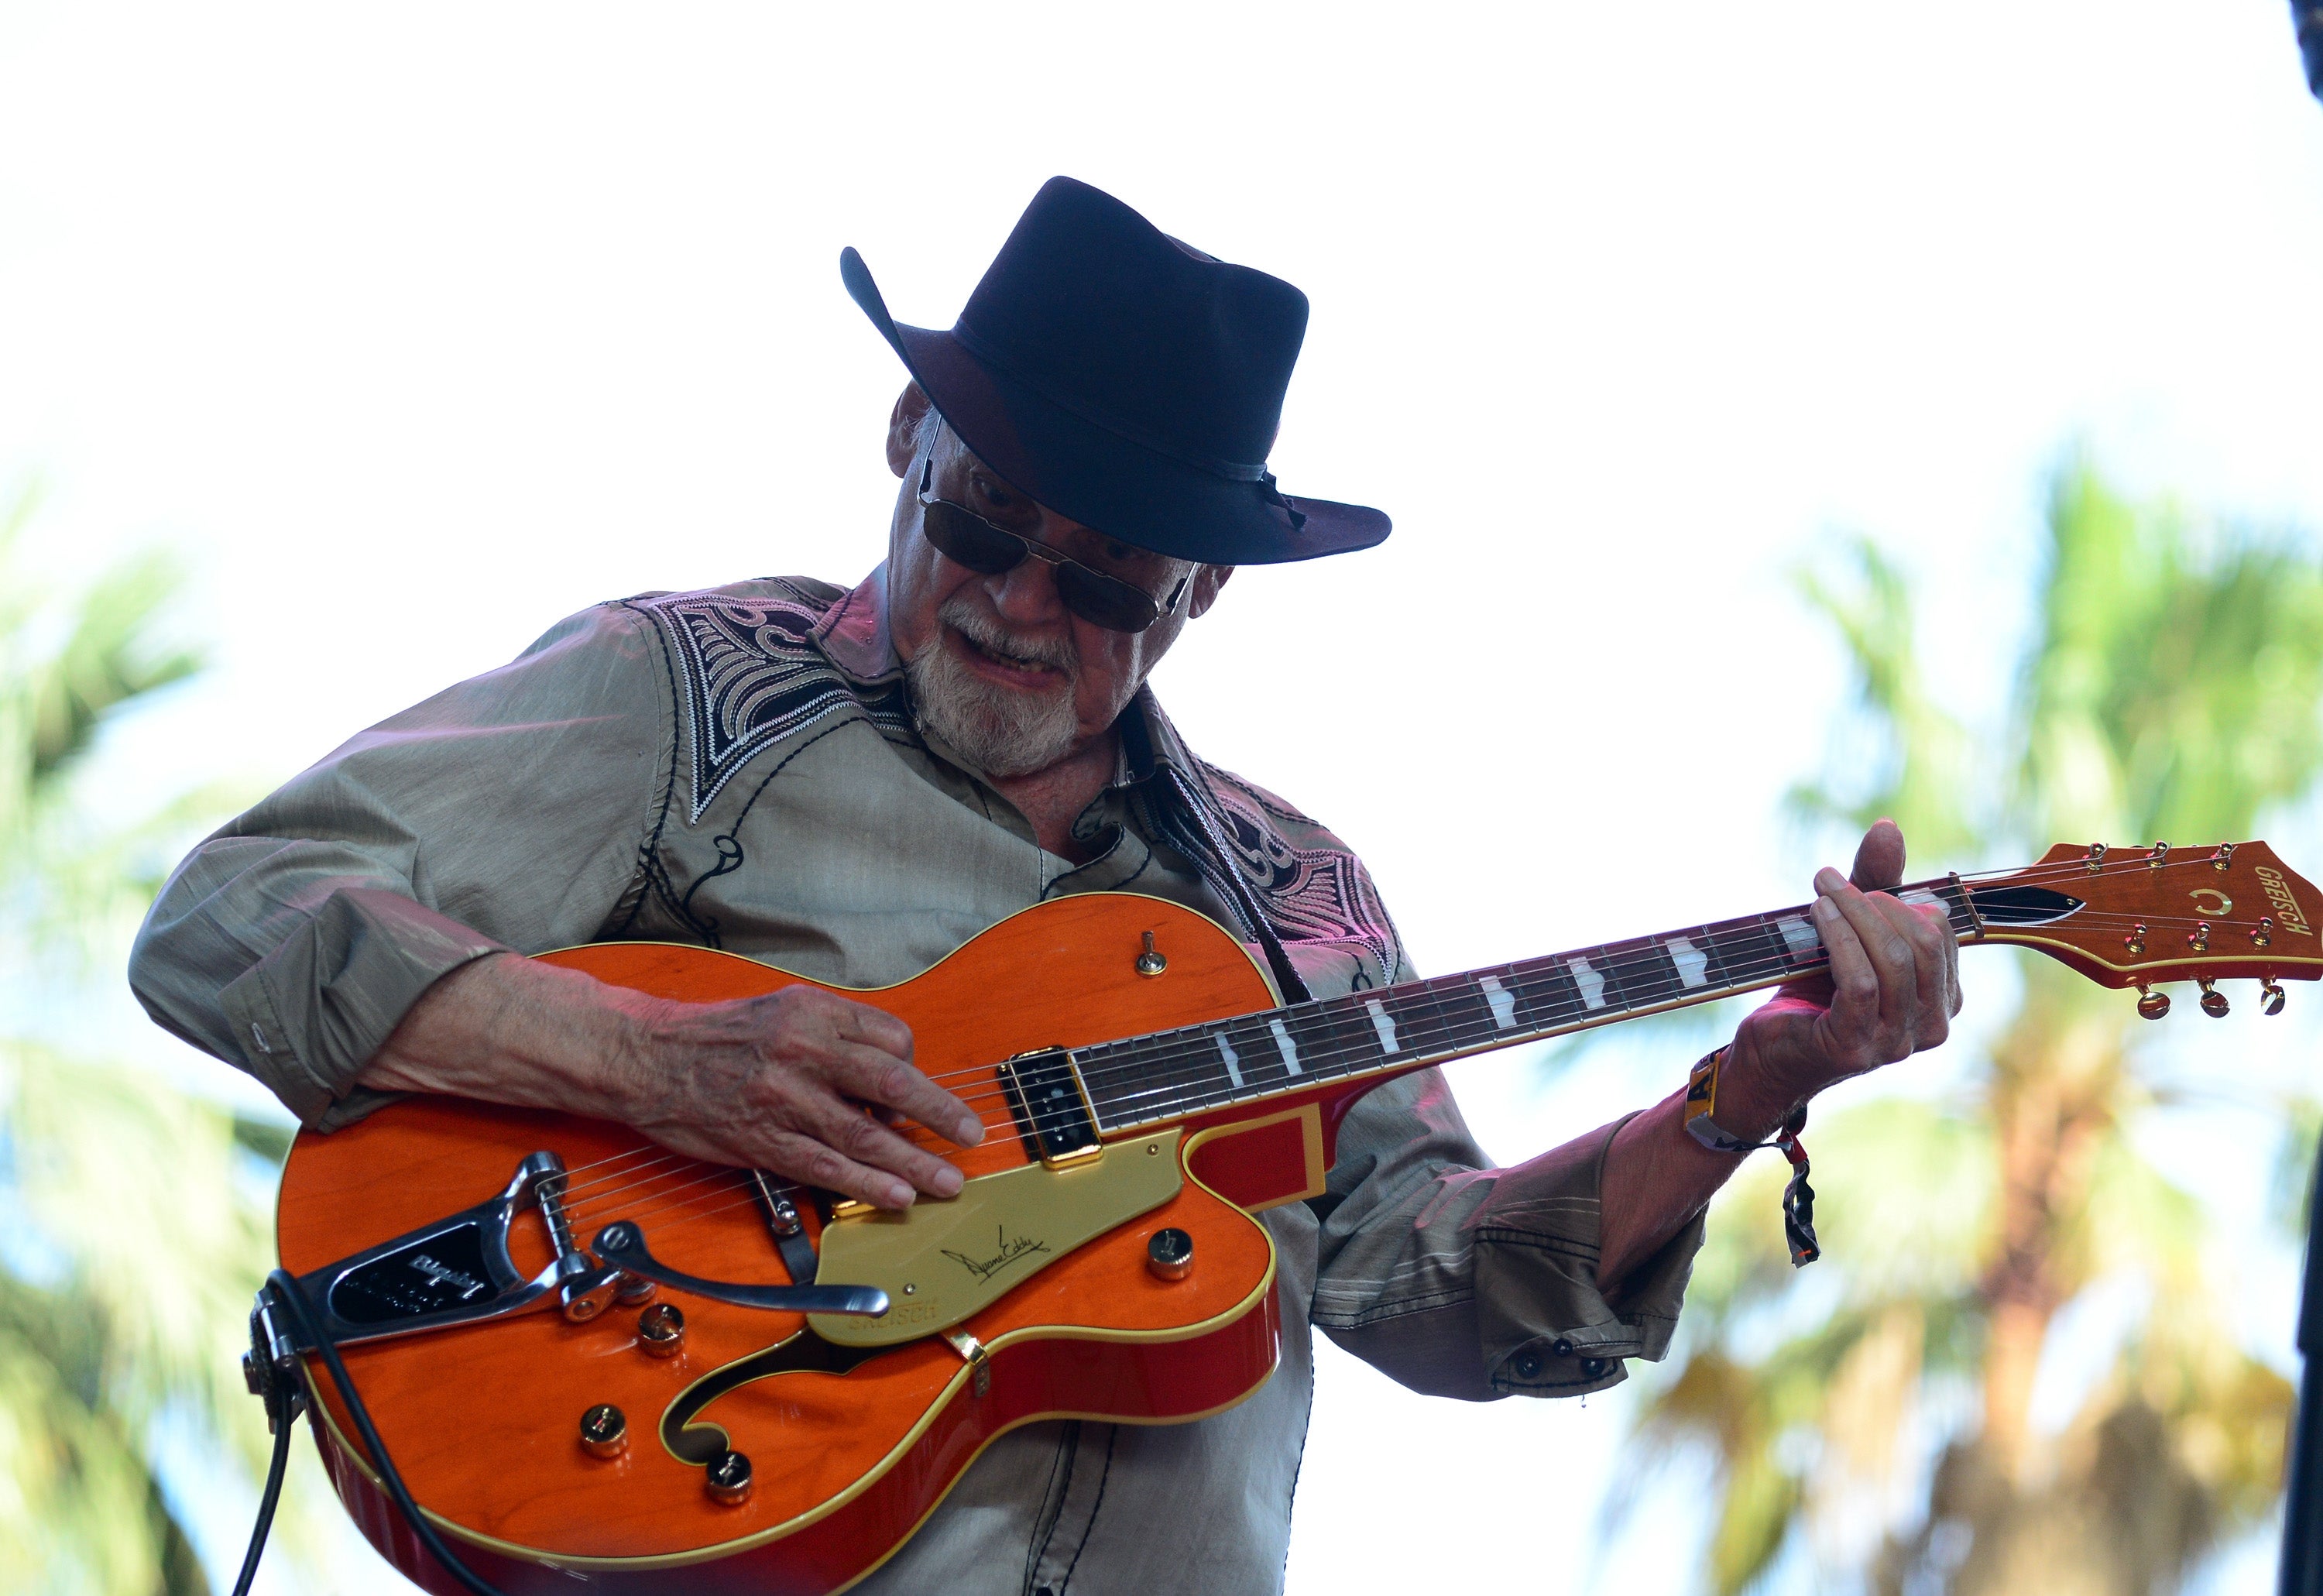 duane eddy, pioneering ‘peter gunn’ guitarist, dies aged 86